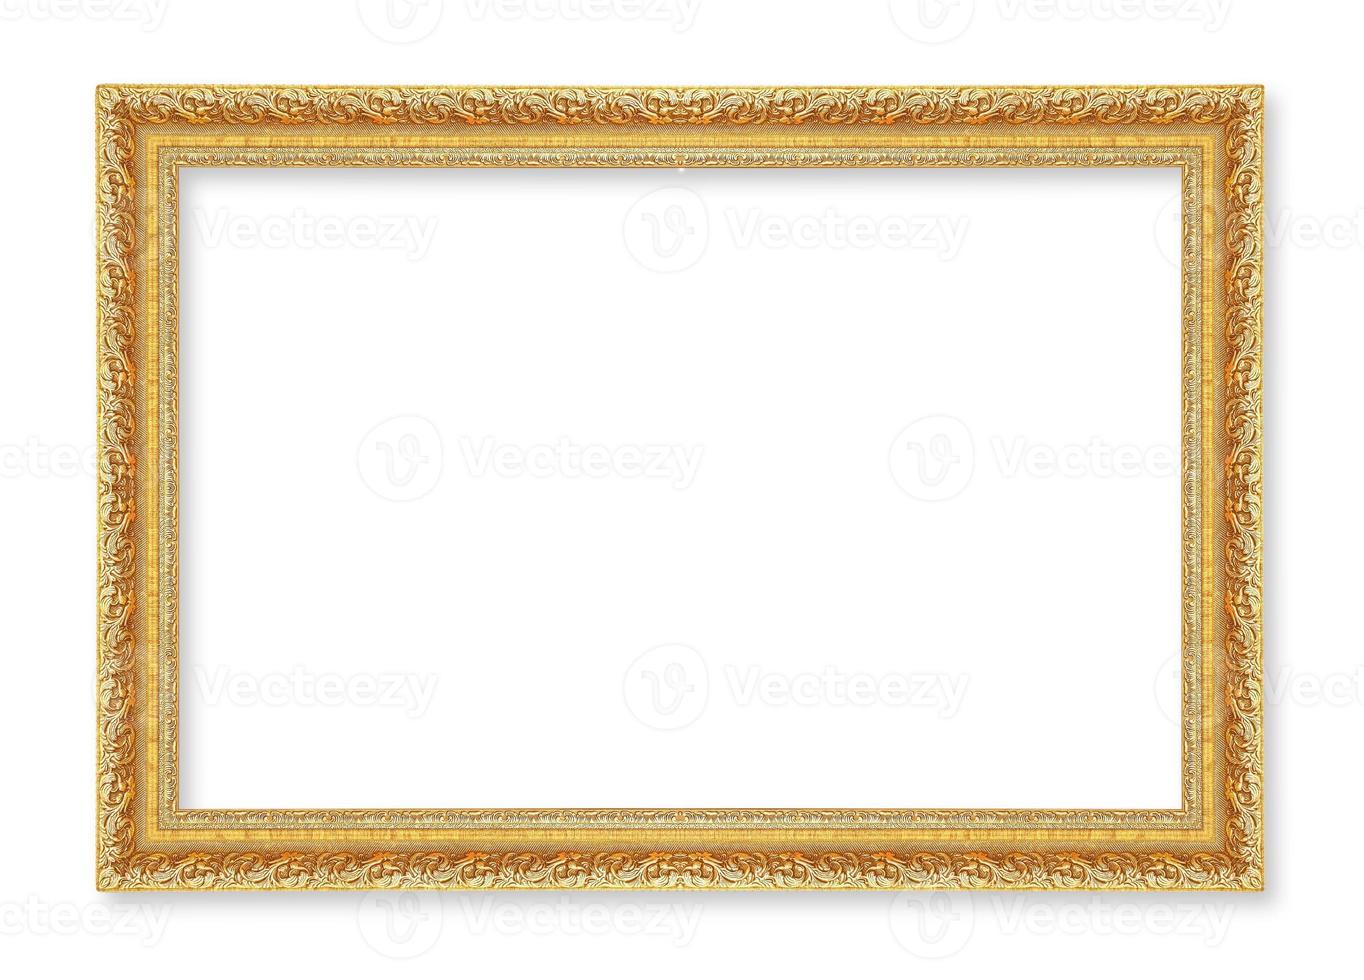 molduras de ouro. isolado em fundo branco foto